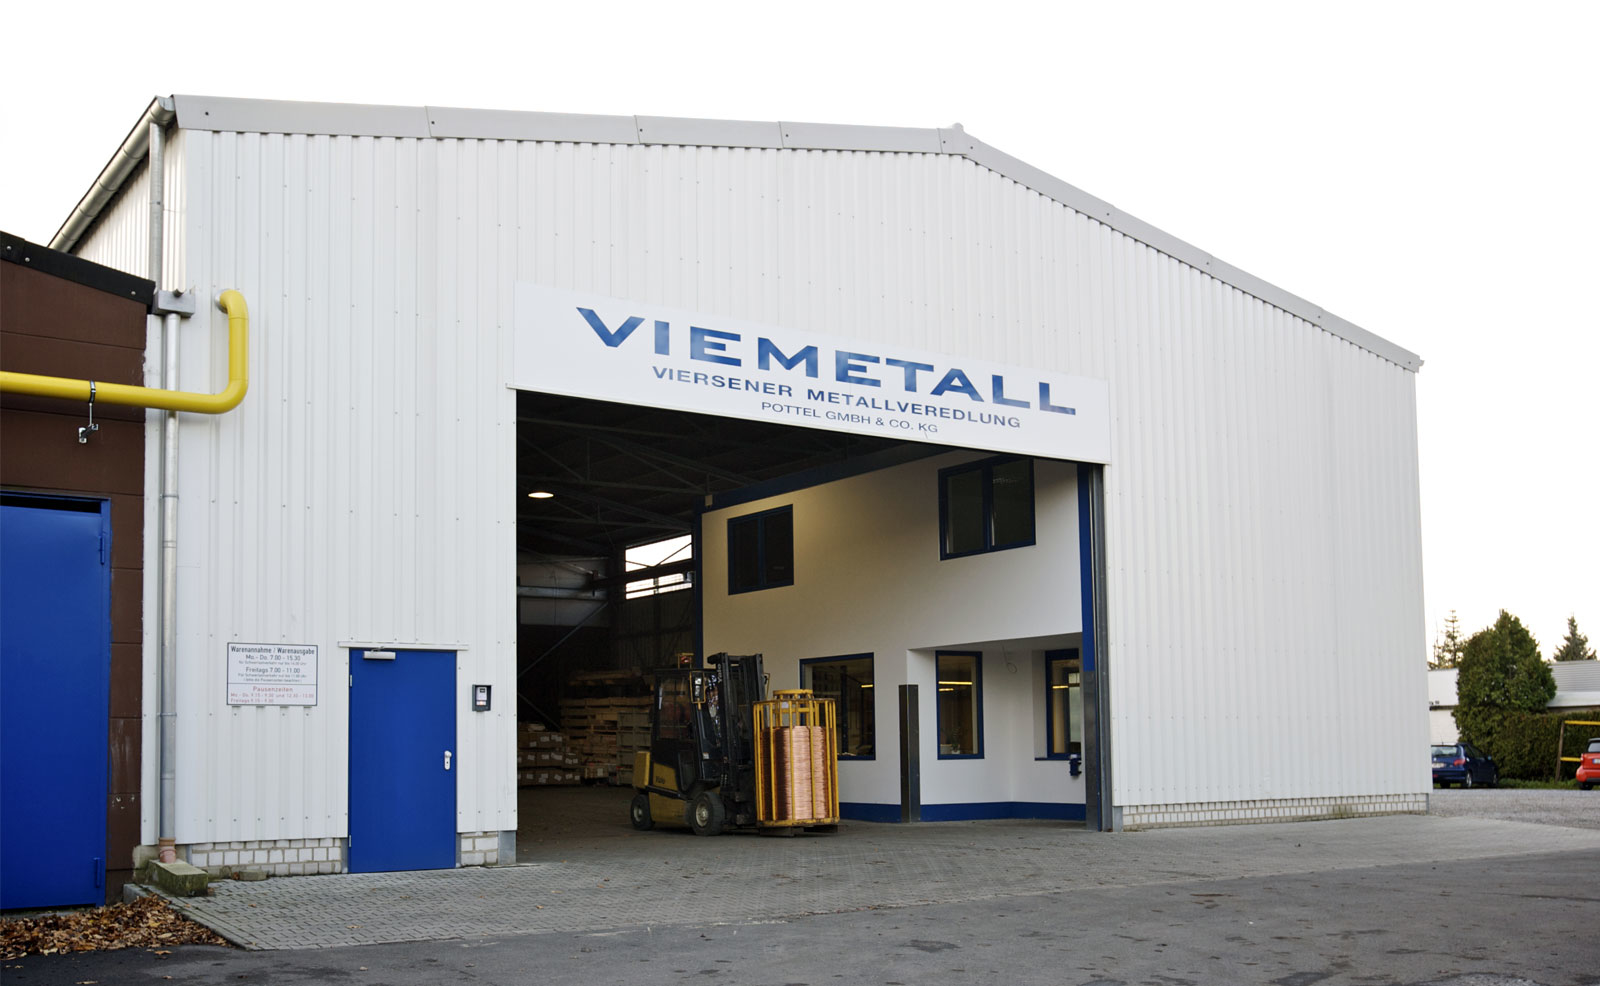 Bilder VIEMETALL Viersener Metallveredlung Pottel GmbH u. Co KG